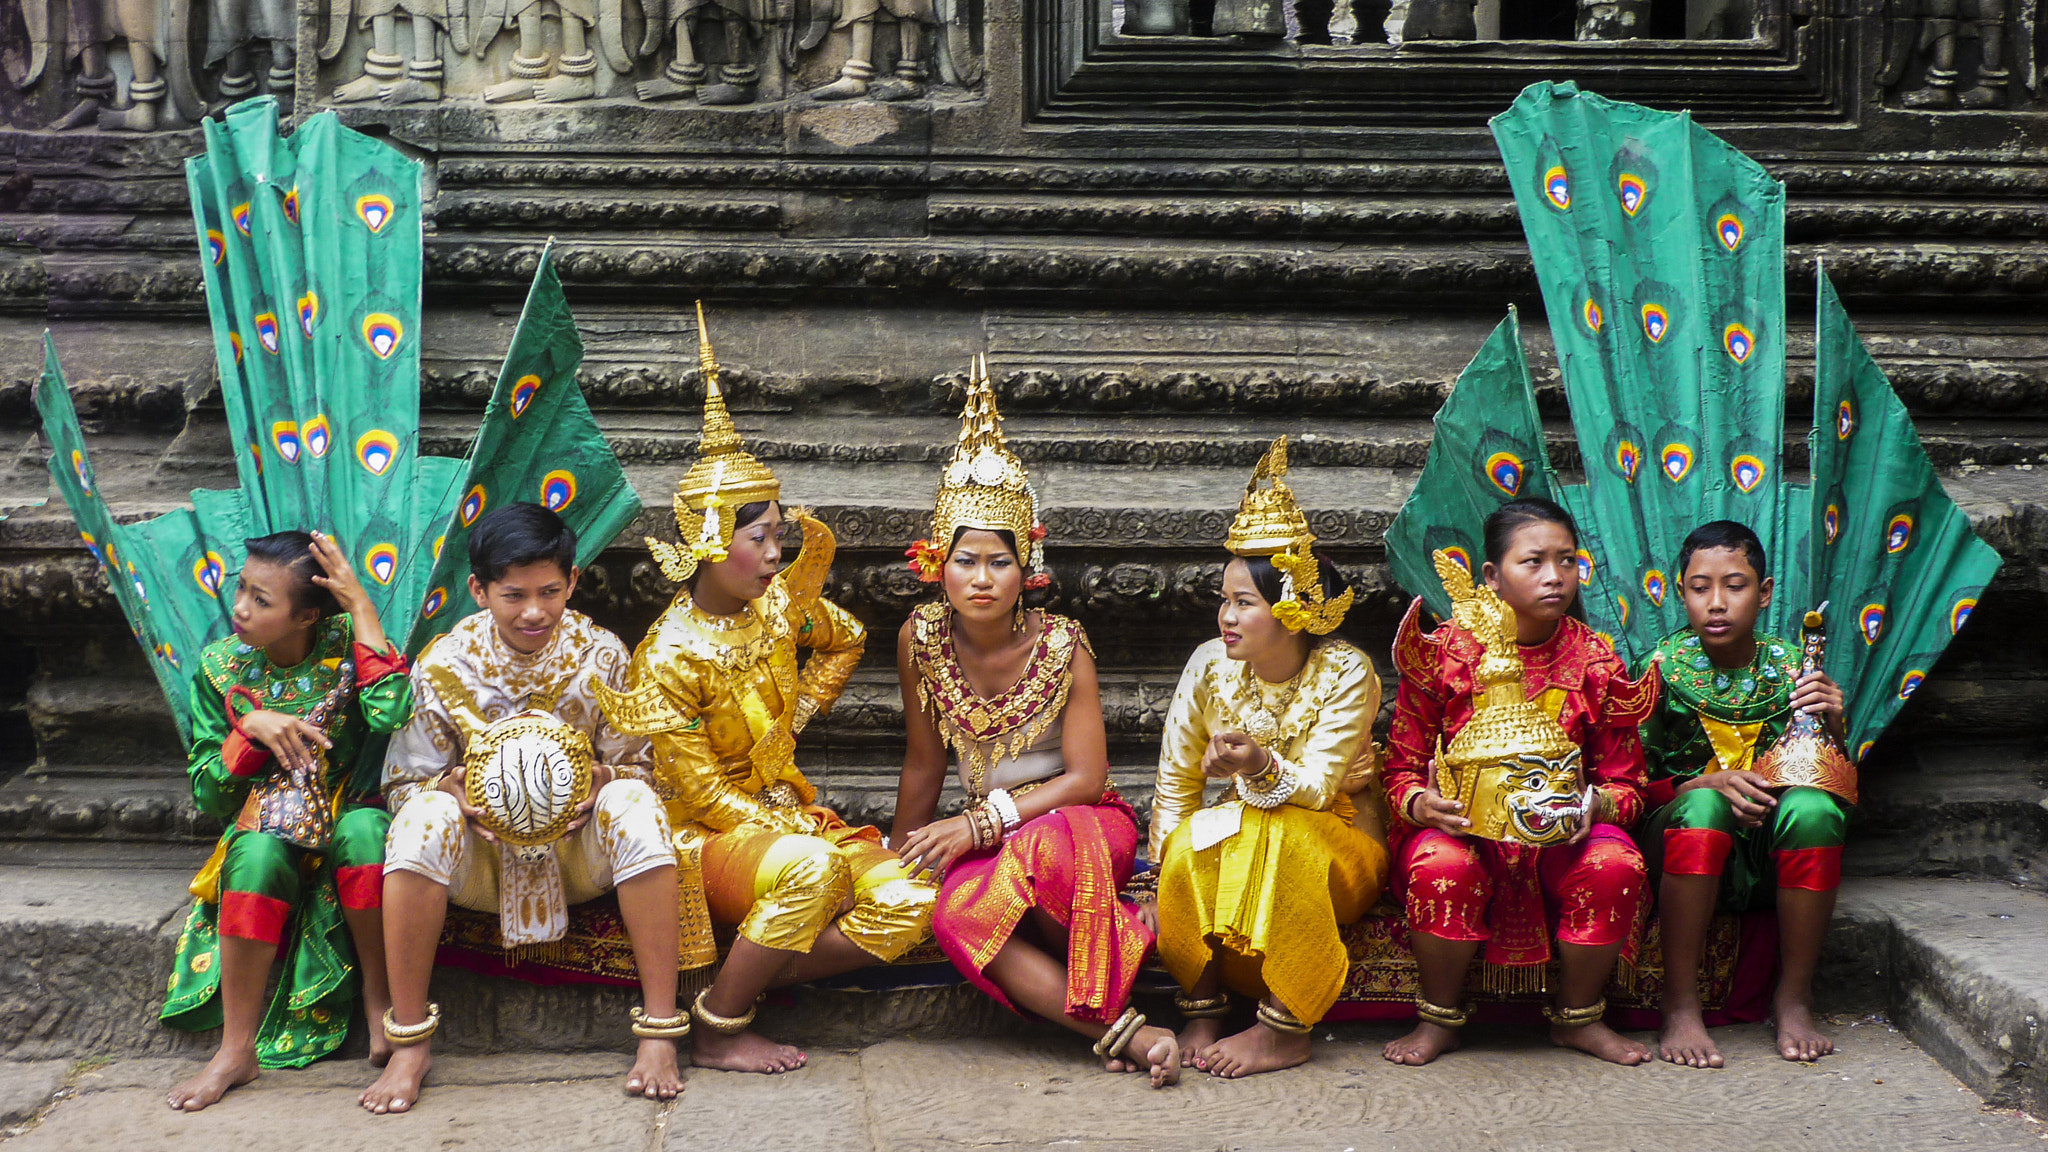 Panasonic DMC-FS42 sample photo. Dancers resting at angkor wat photography